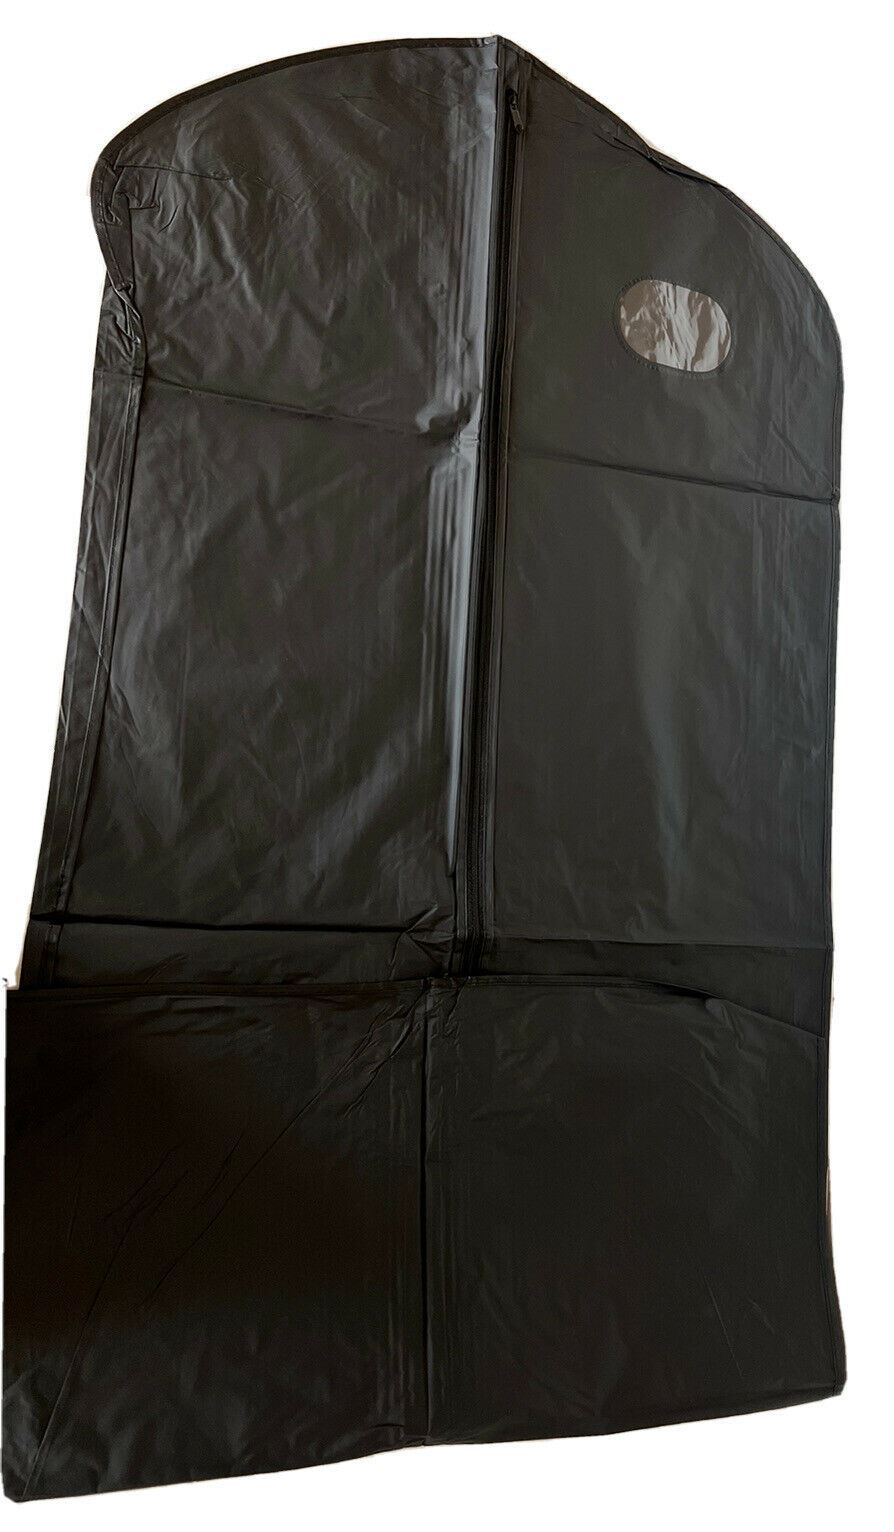 Brand New Garment Bag Waterproof Black 54" L x 23.75" W